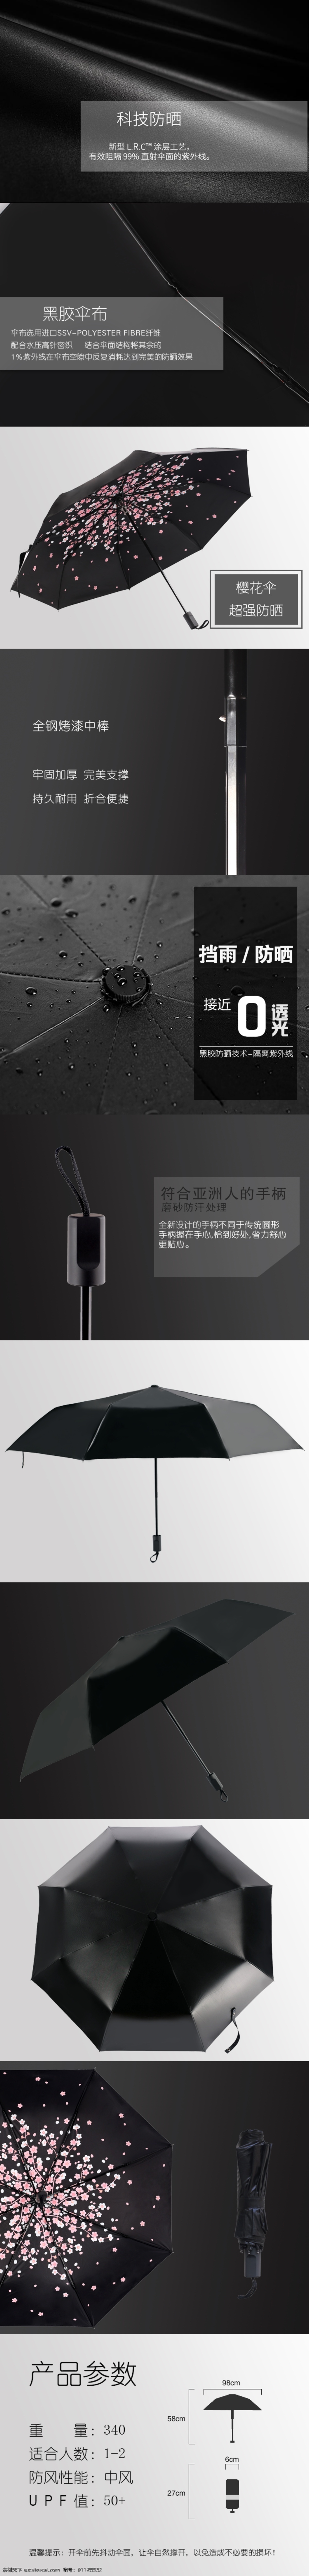 樱花雨伞 雨伞 淘宝伞 落樱伞 樱花伞 伞